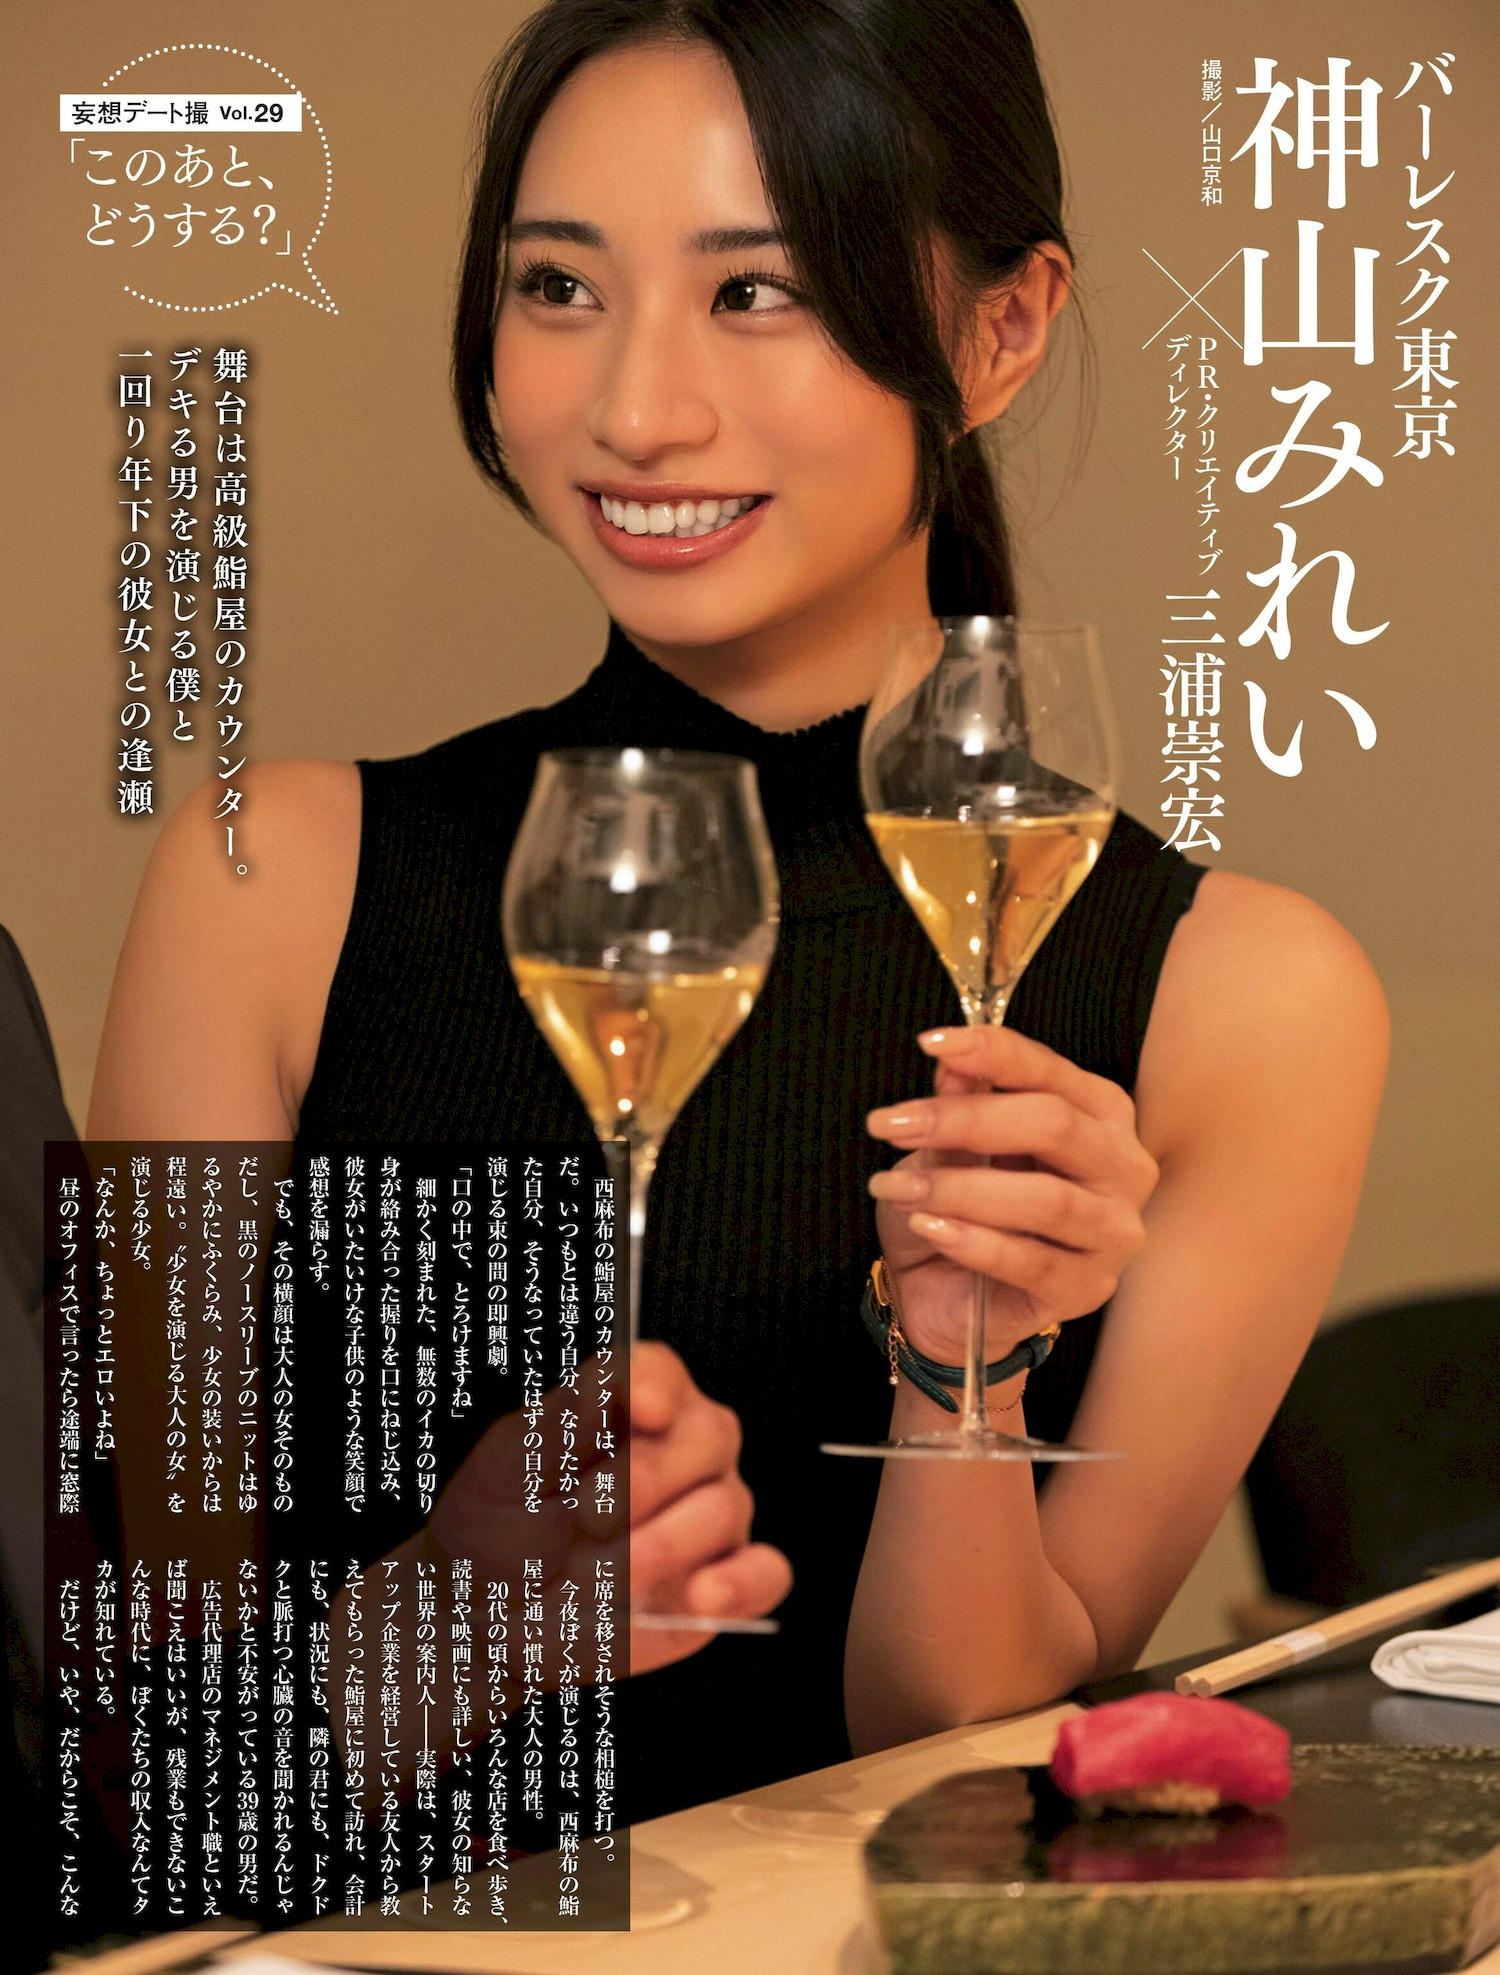 Mirei Kamiyama 神山みれい, Weekly SPA! 2022.11.01 (週刊SPA! 2022年11月1日号) - itotii